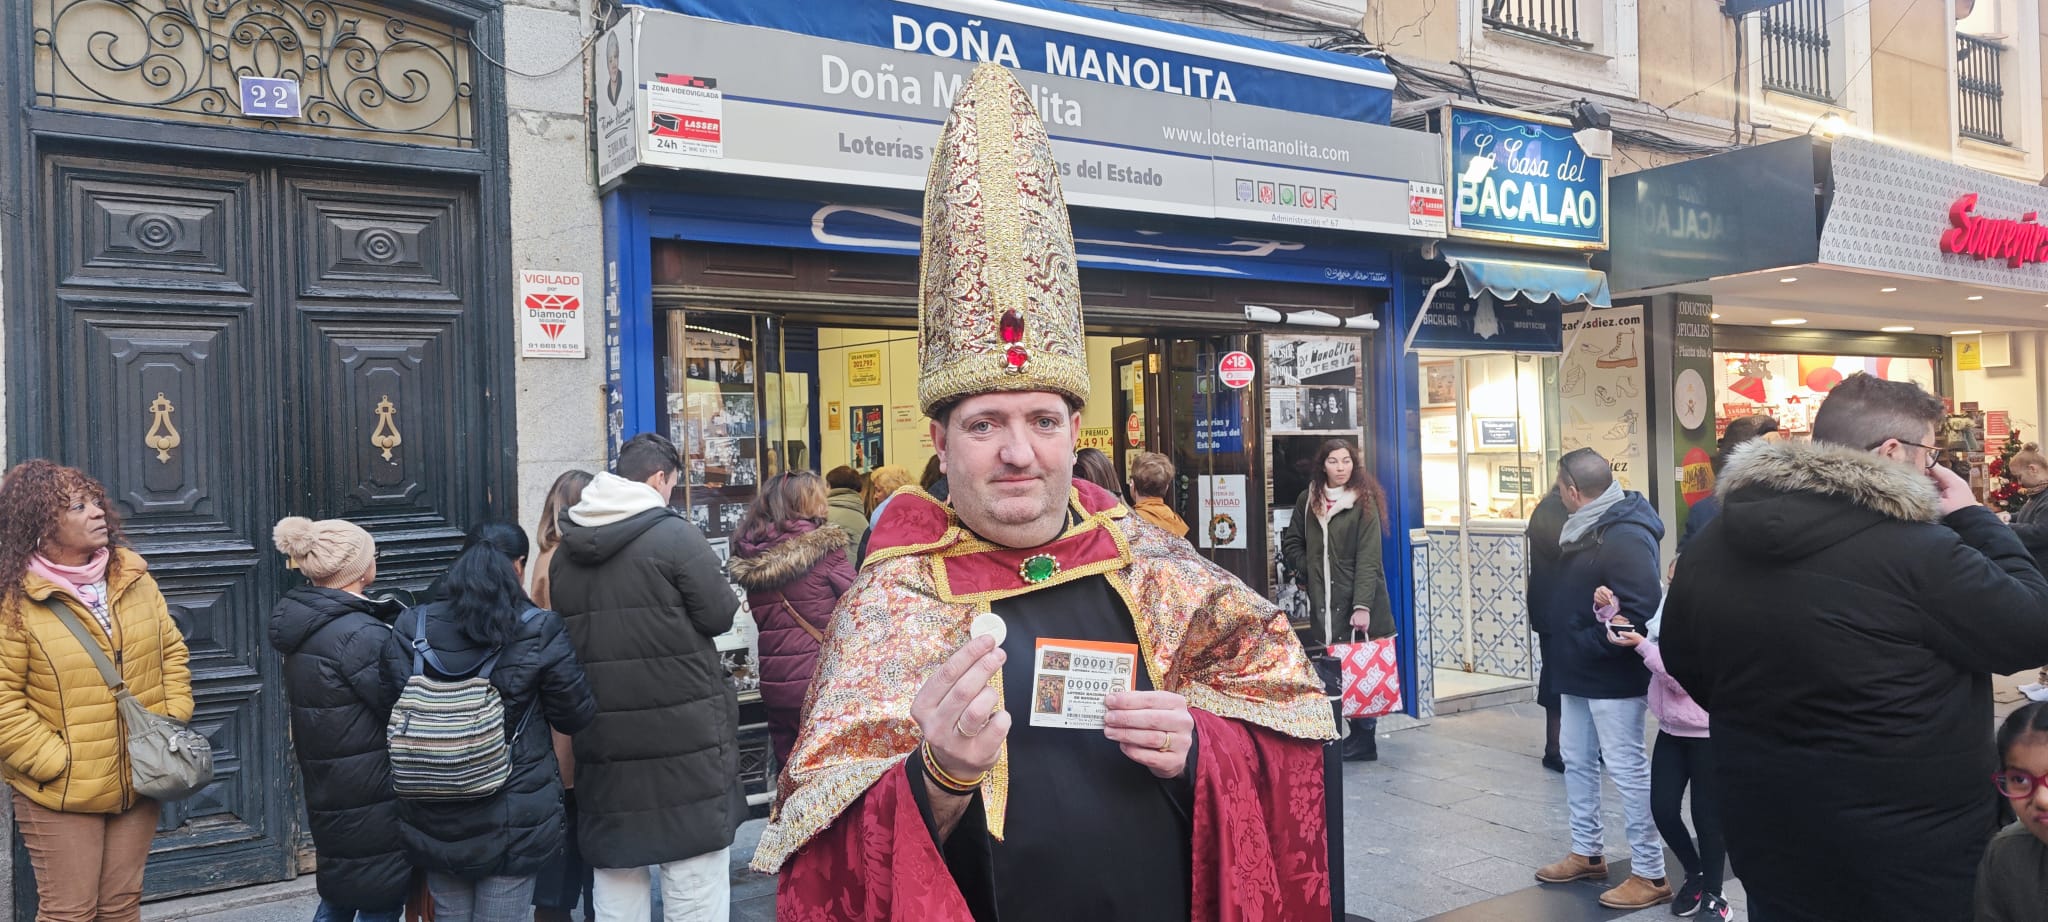 Juan López se transforma cada año en el 'obispo de la lotería' para asistir al sorteo extraordinario de Navidad. | L.N.C.